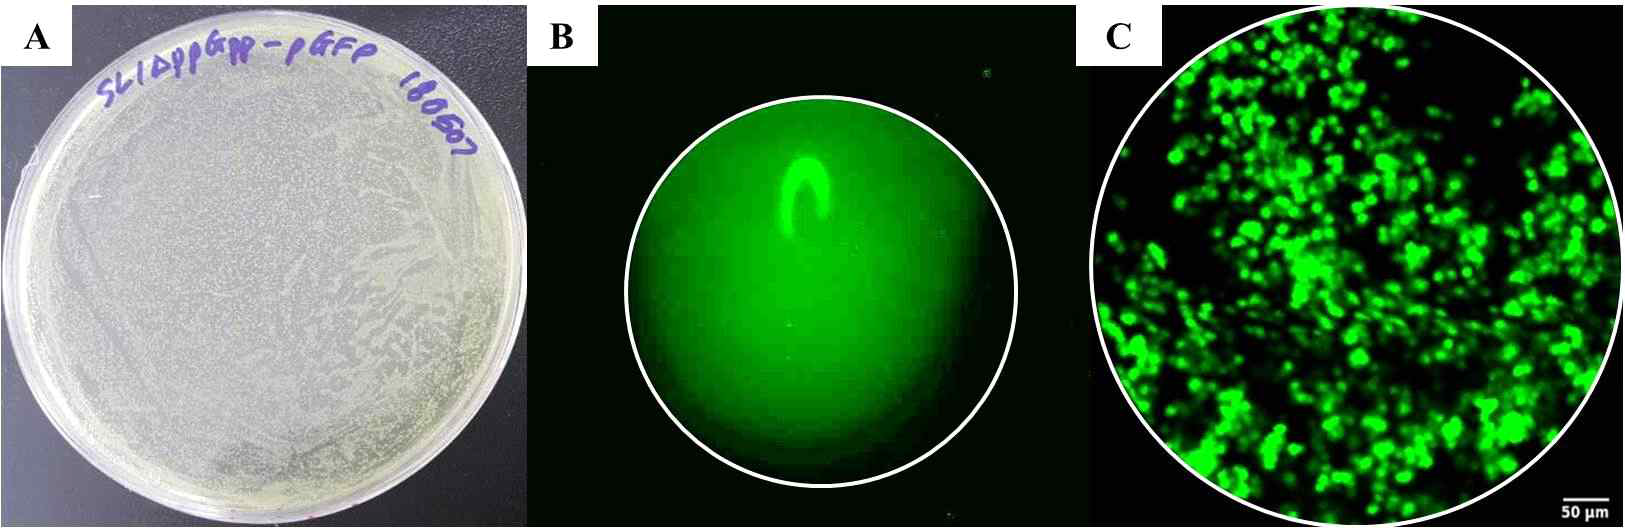 형광 박테리아. (A) Salmonella ΔppGpp GFP 박테리아를 배양한 배지의 사진. Colony가 녹색을 띄고 있음. (B) 광시야 형광내시경 시스템으로 얻은 형광 박테리아를 담은 1 mL EP tube의 형광 영상. (C) 공초점 형광내시경 시스템을 이용하여 획득한 형광박테리아 영상. Multiple small dots들이 잘 관찰됨